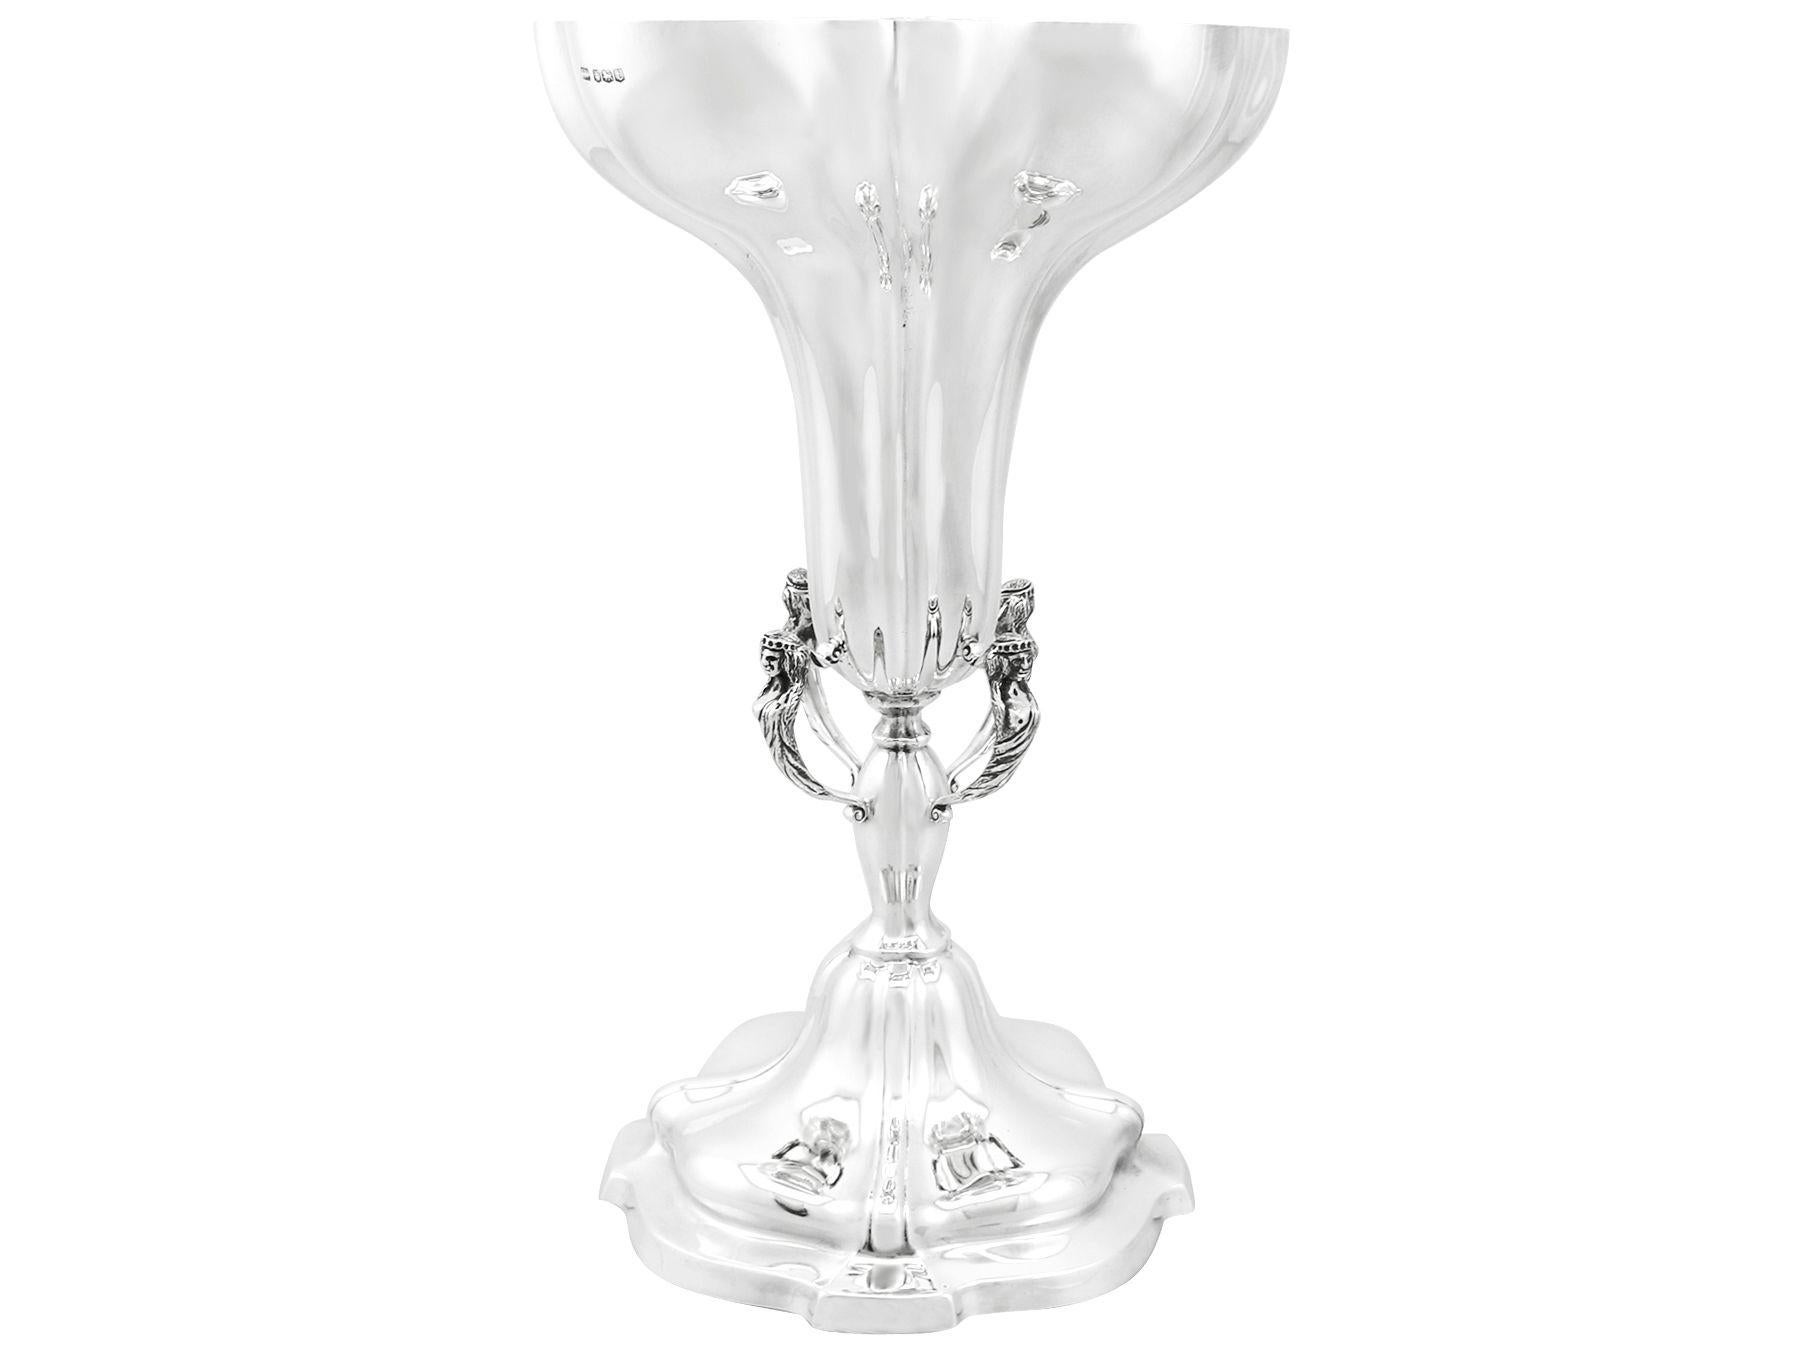 English Viners Ltd 1930s Antique Edwardian Sterling Silver Presentation Cup or Vase For Sale